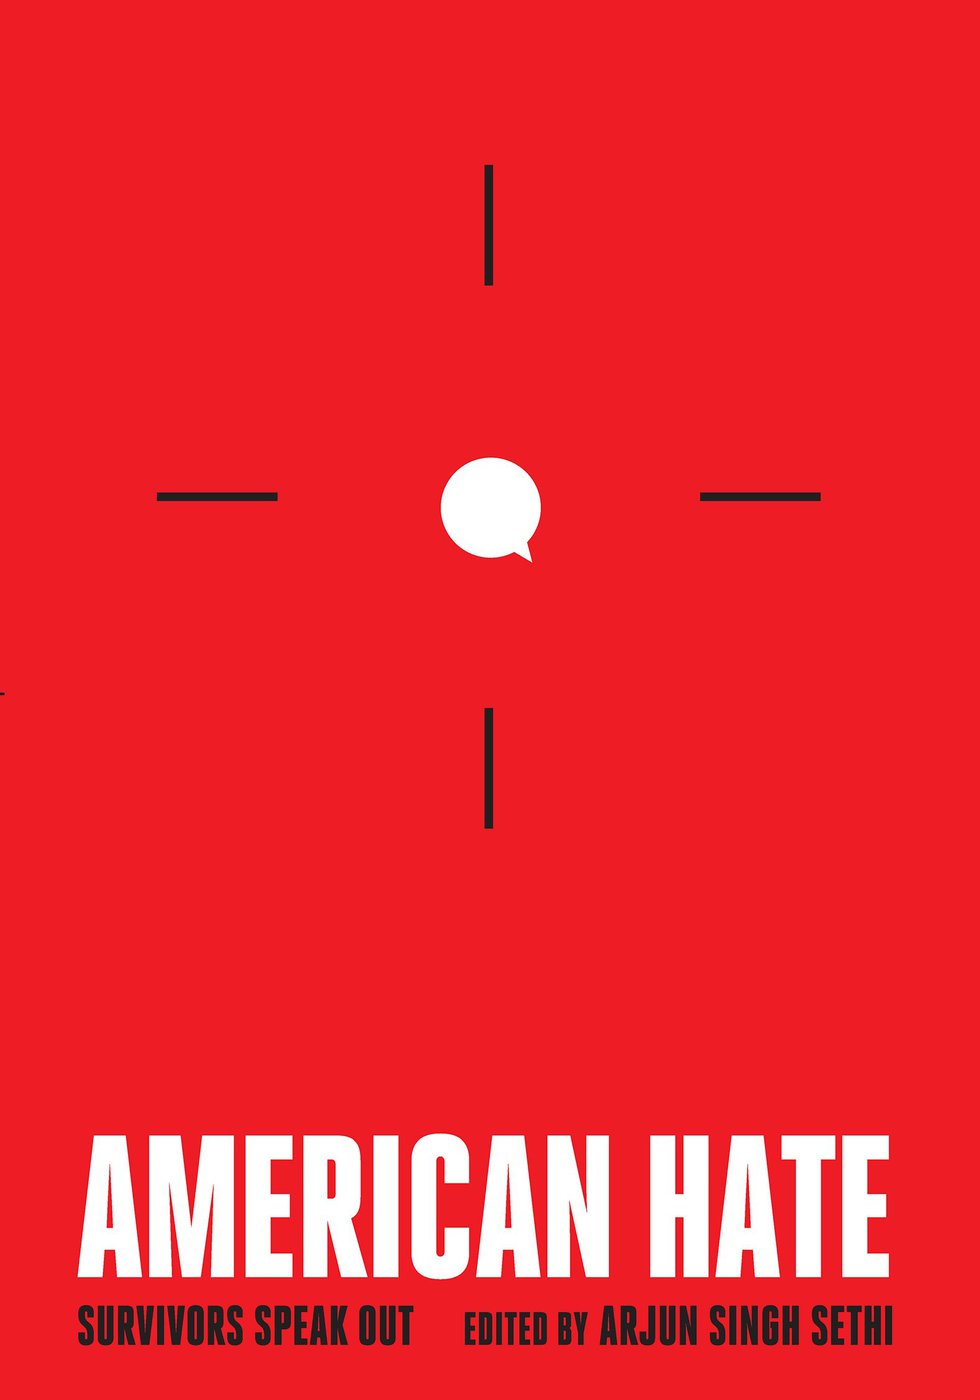 American Hate: Survivors Speak Out edited by Arjun Singh Sethi